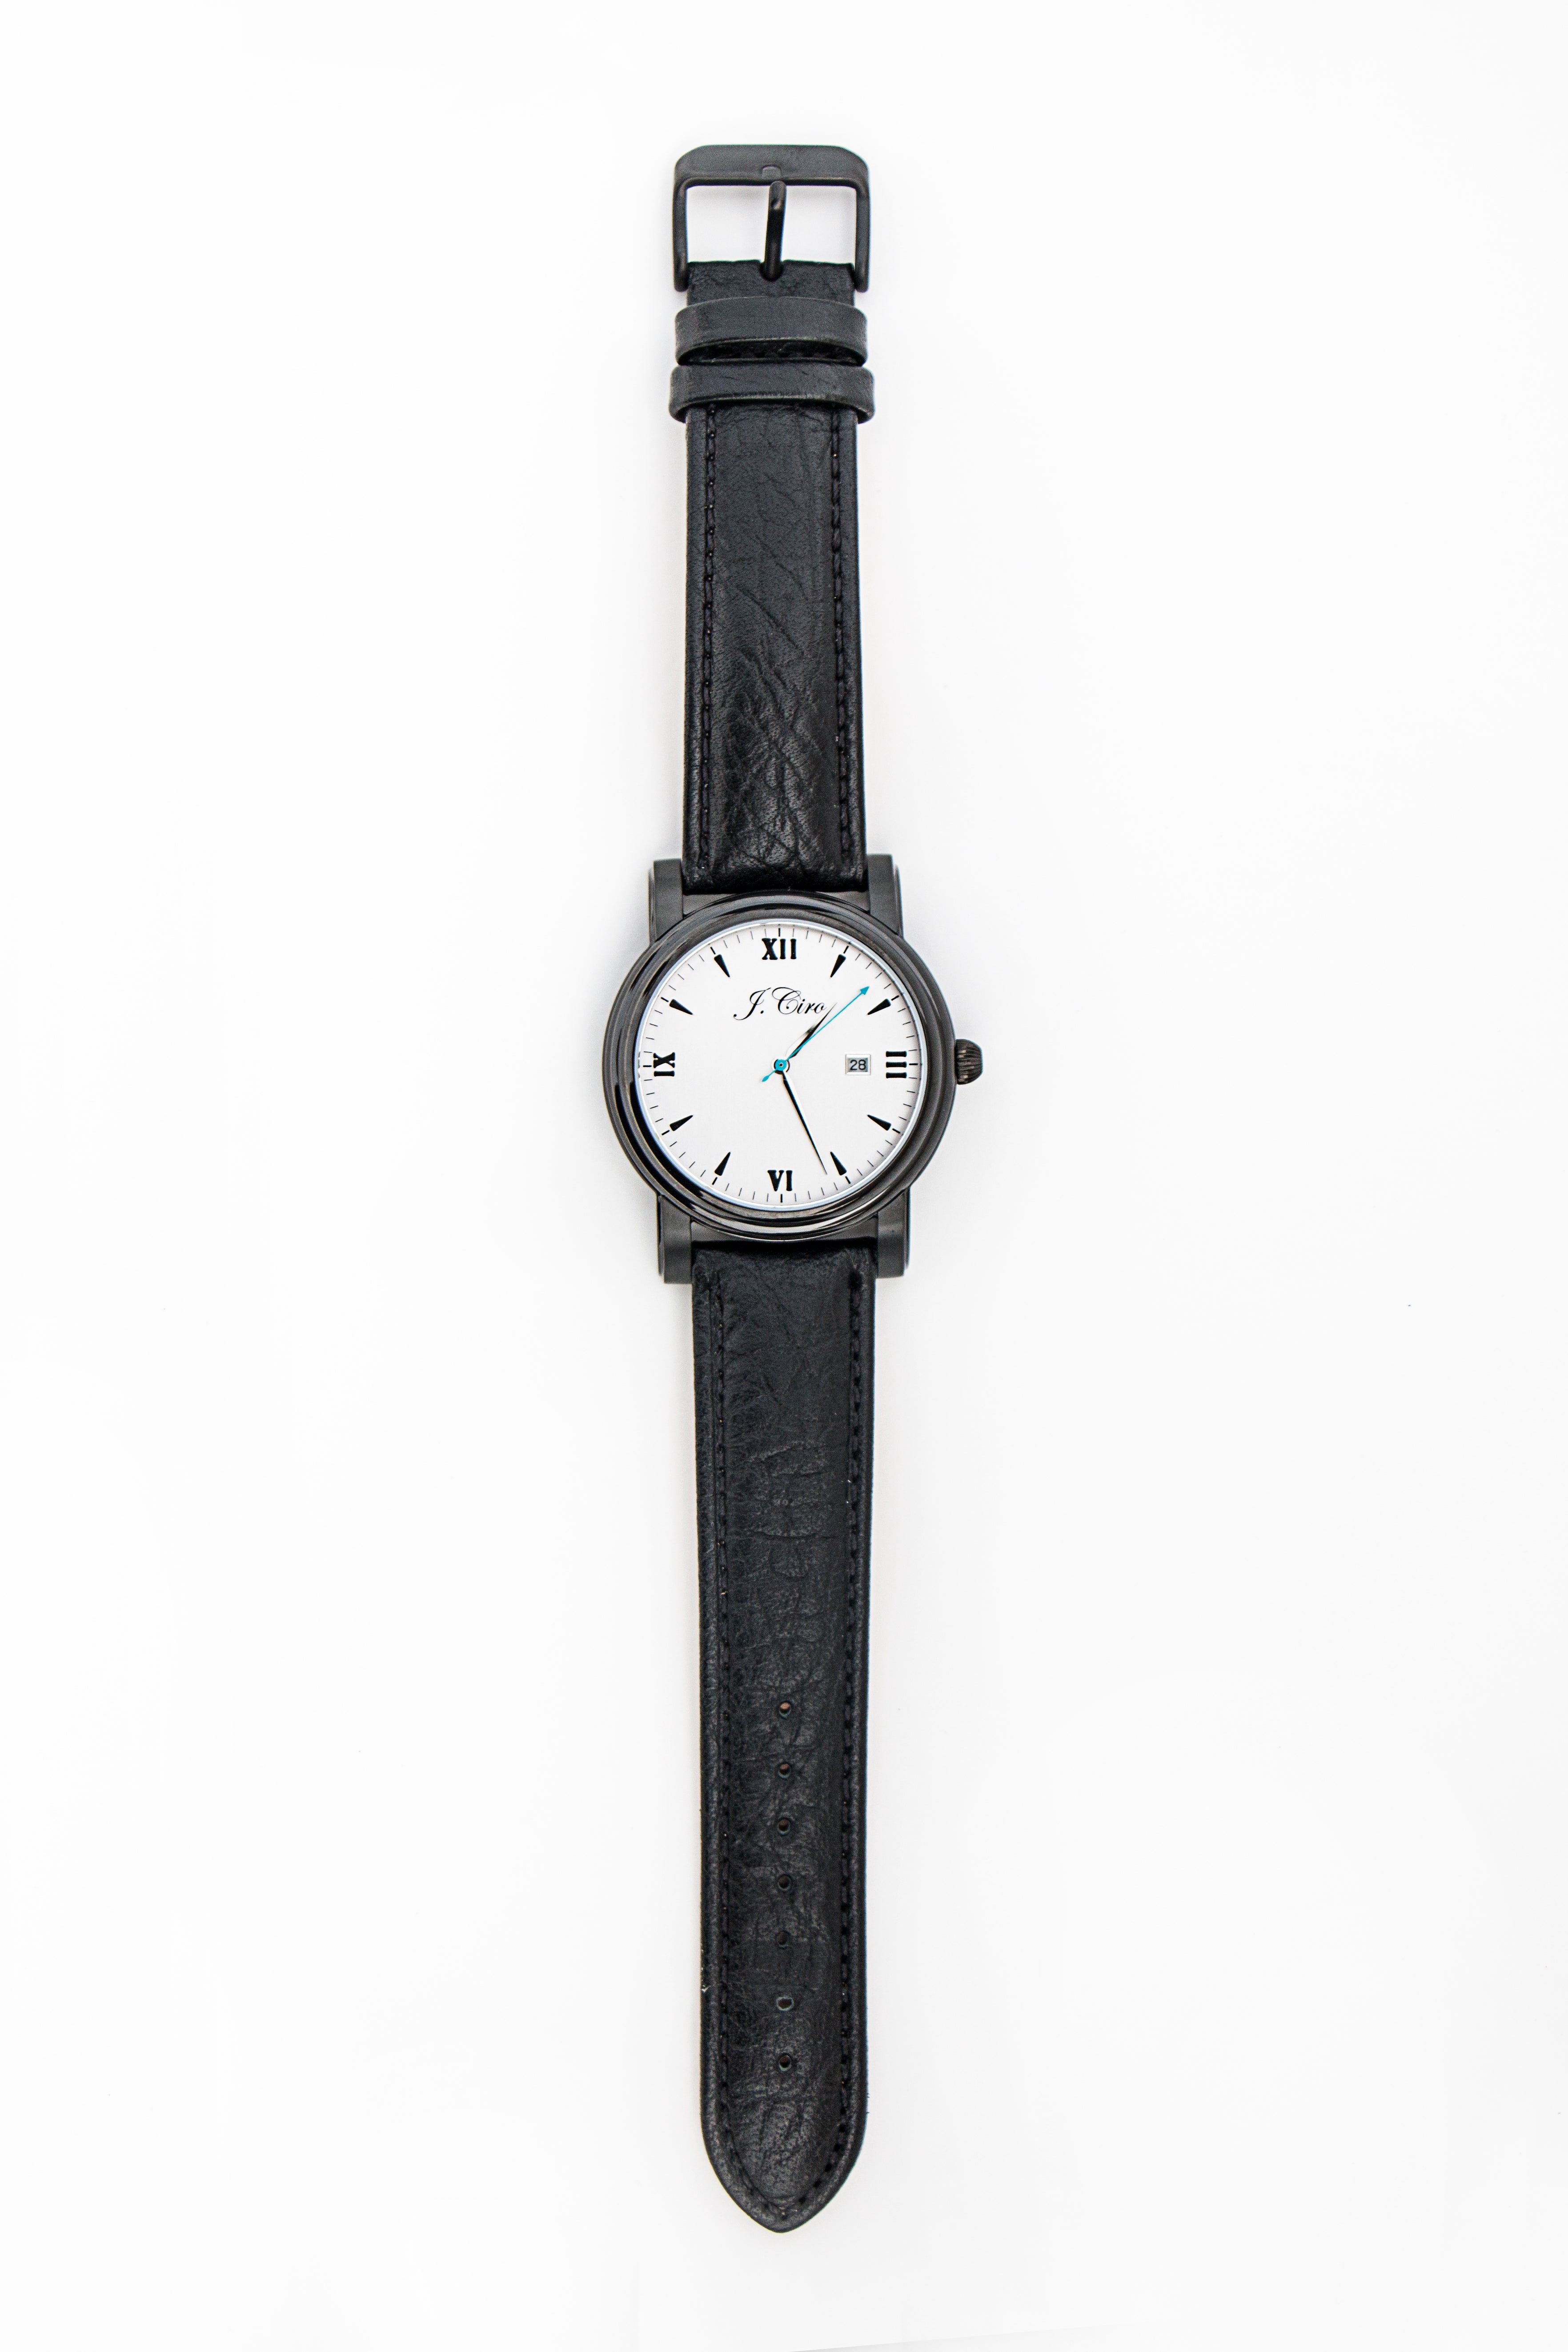 Black Genuine Shrunken Leather Watch Strap